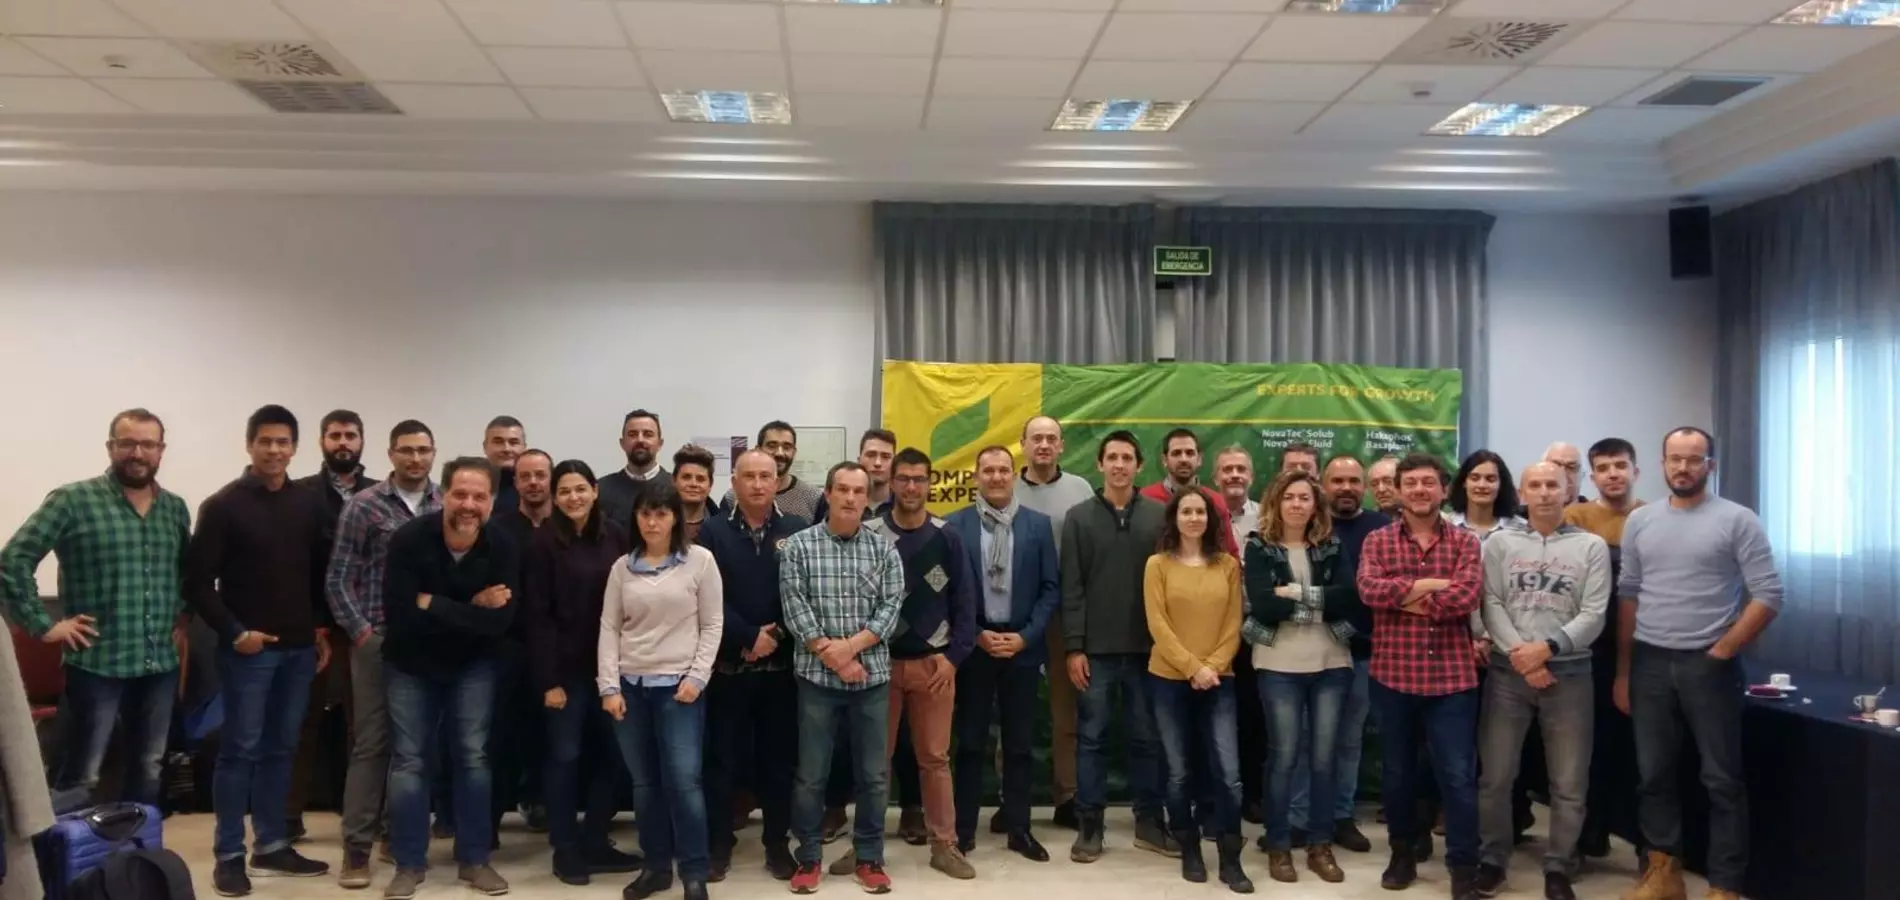 Nuestros distribuidores se reunieron en Zaragoza para abordar los “retos de la agricultura”